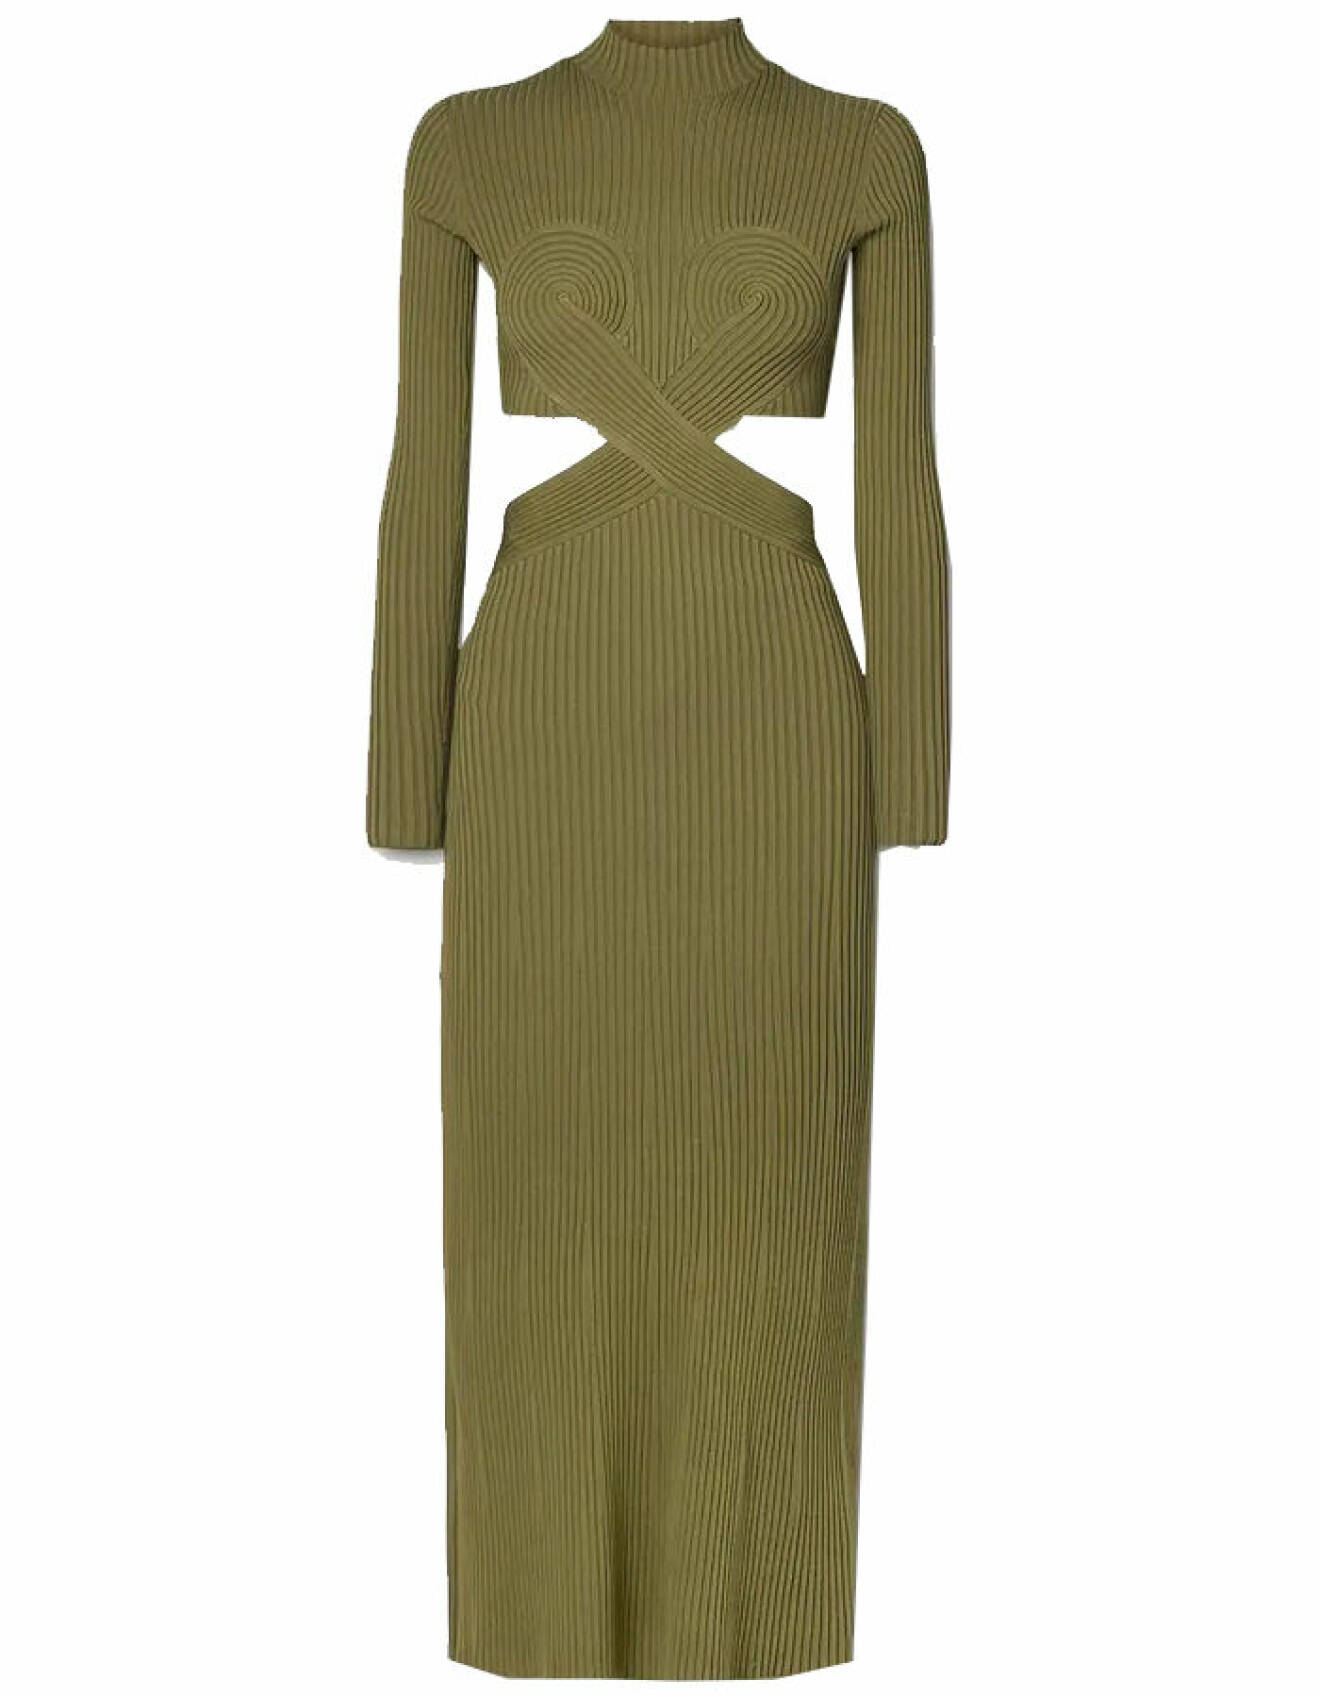 grön ribbstickad klänning med cutout från Dion Lee 2022